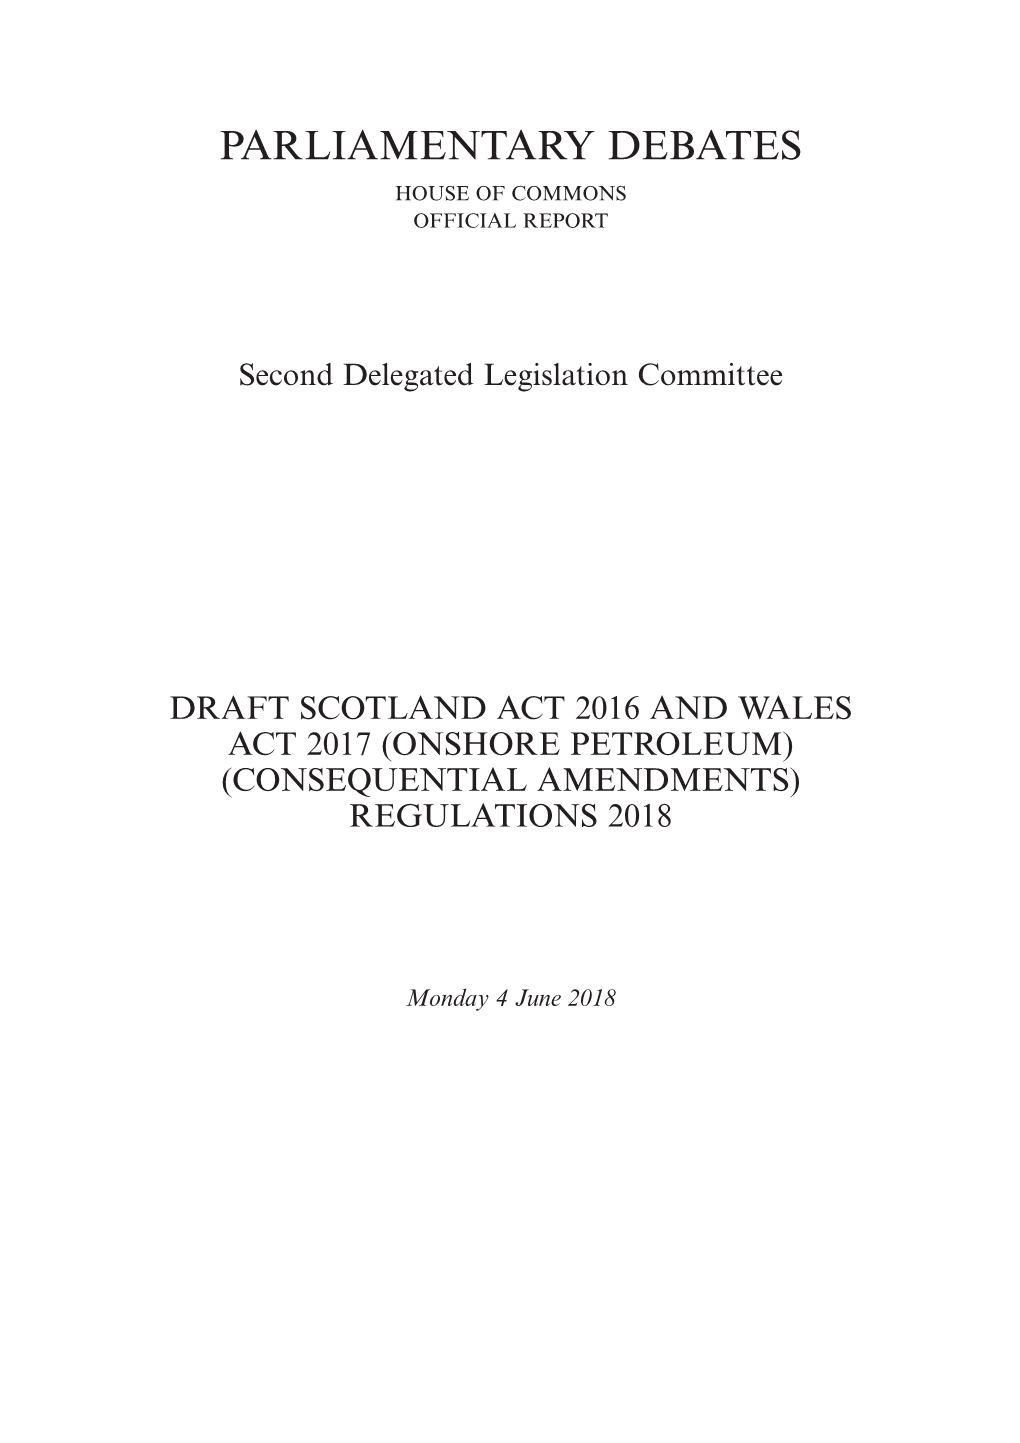 Consequential Amendments) Regulations 2018